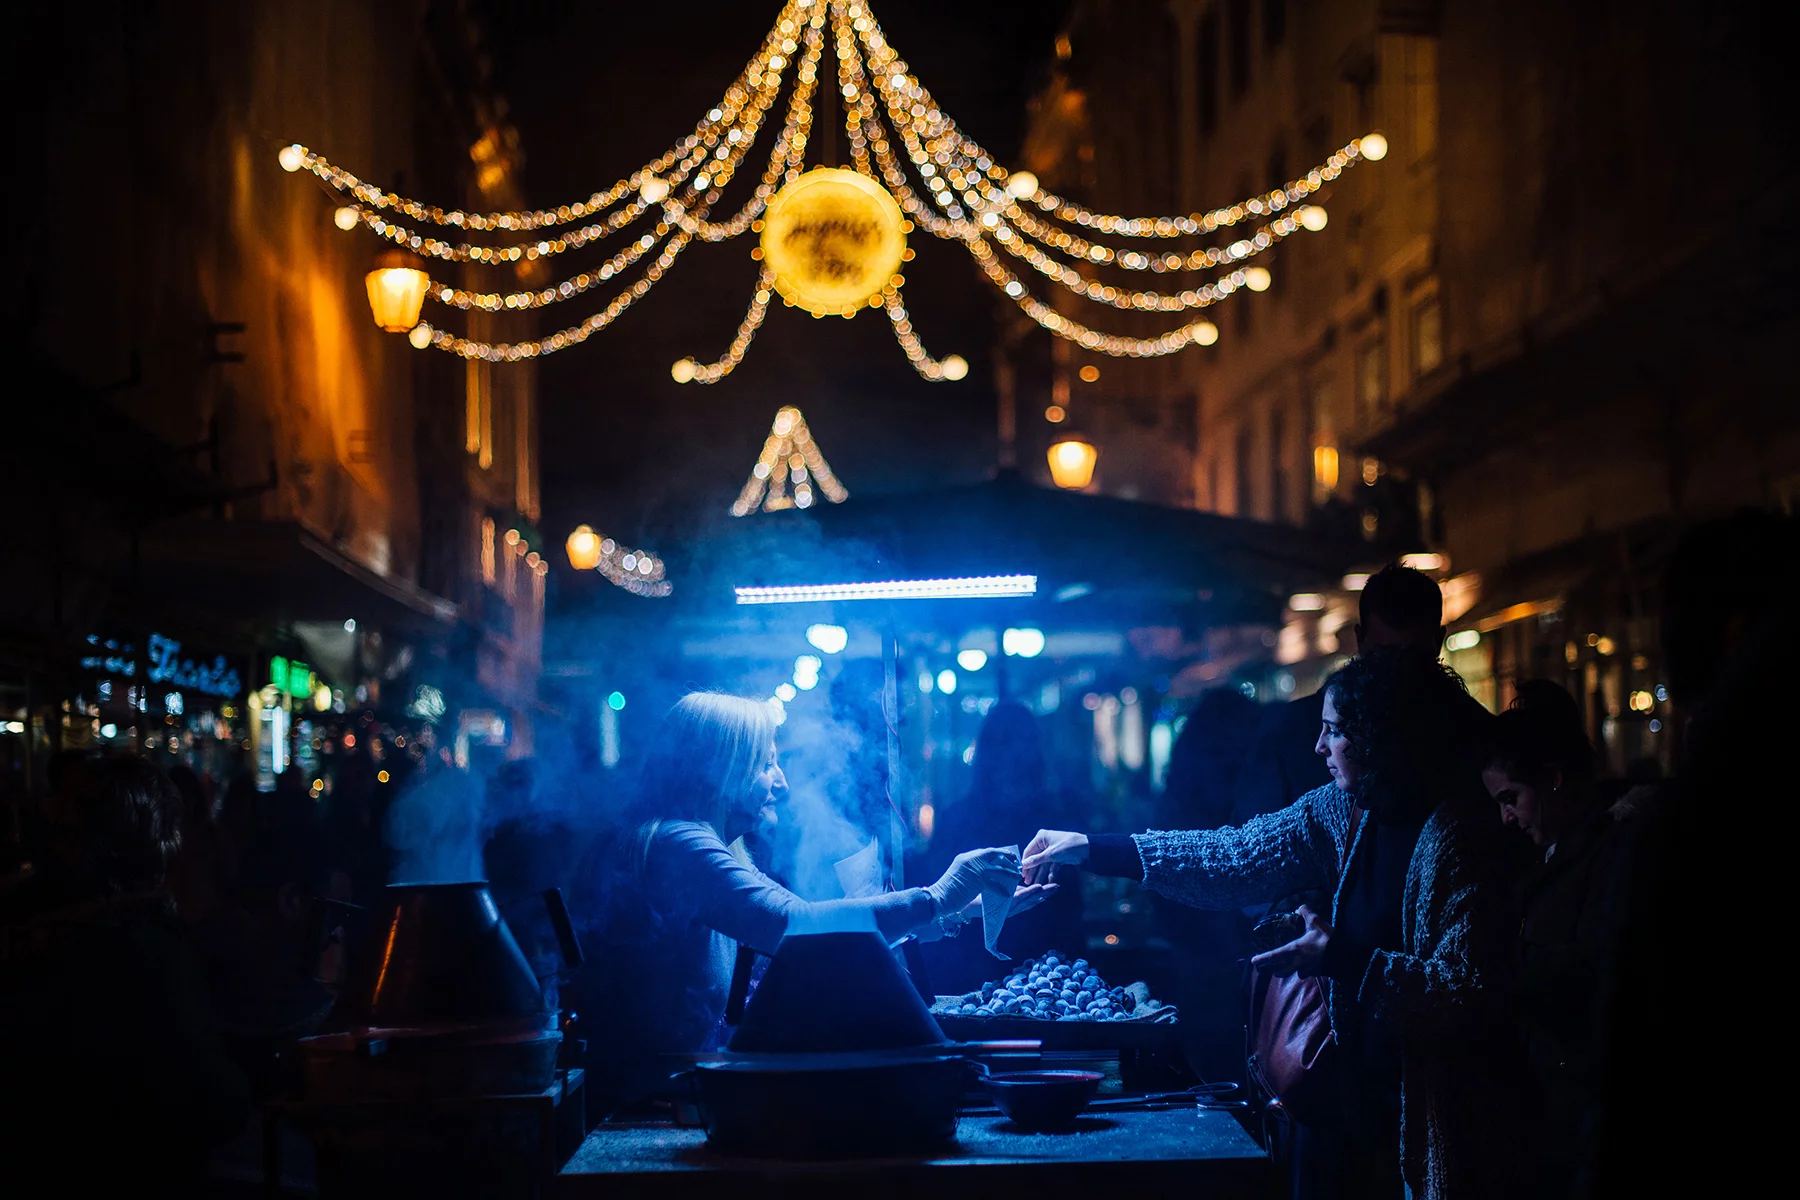 Christmas market in Lisbon